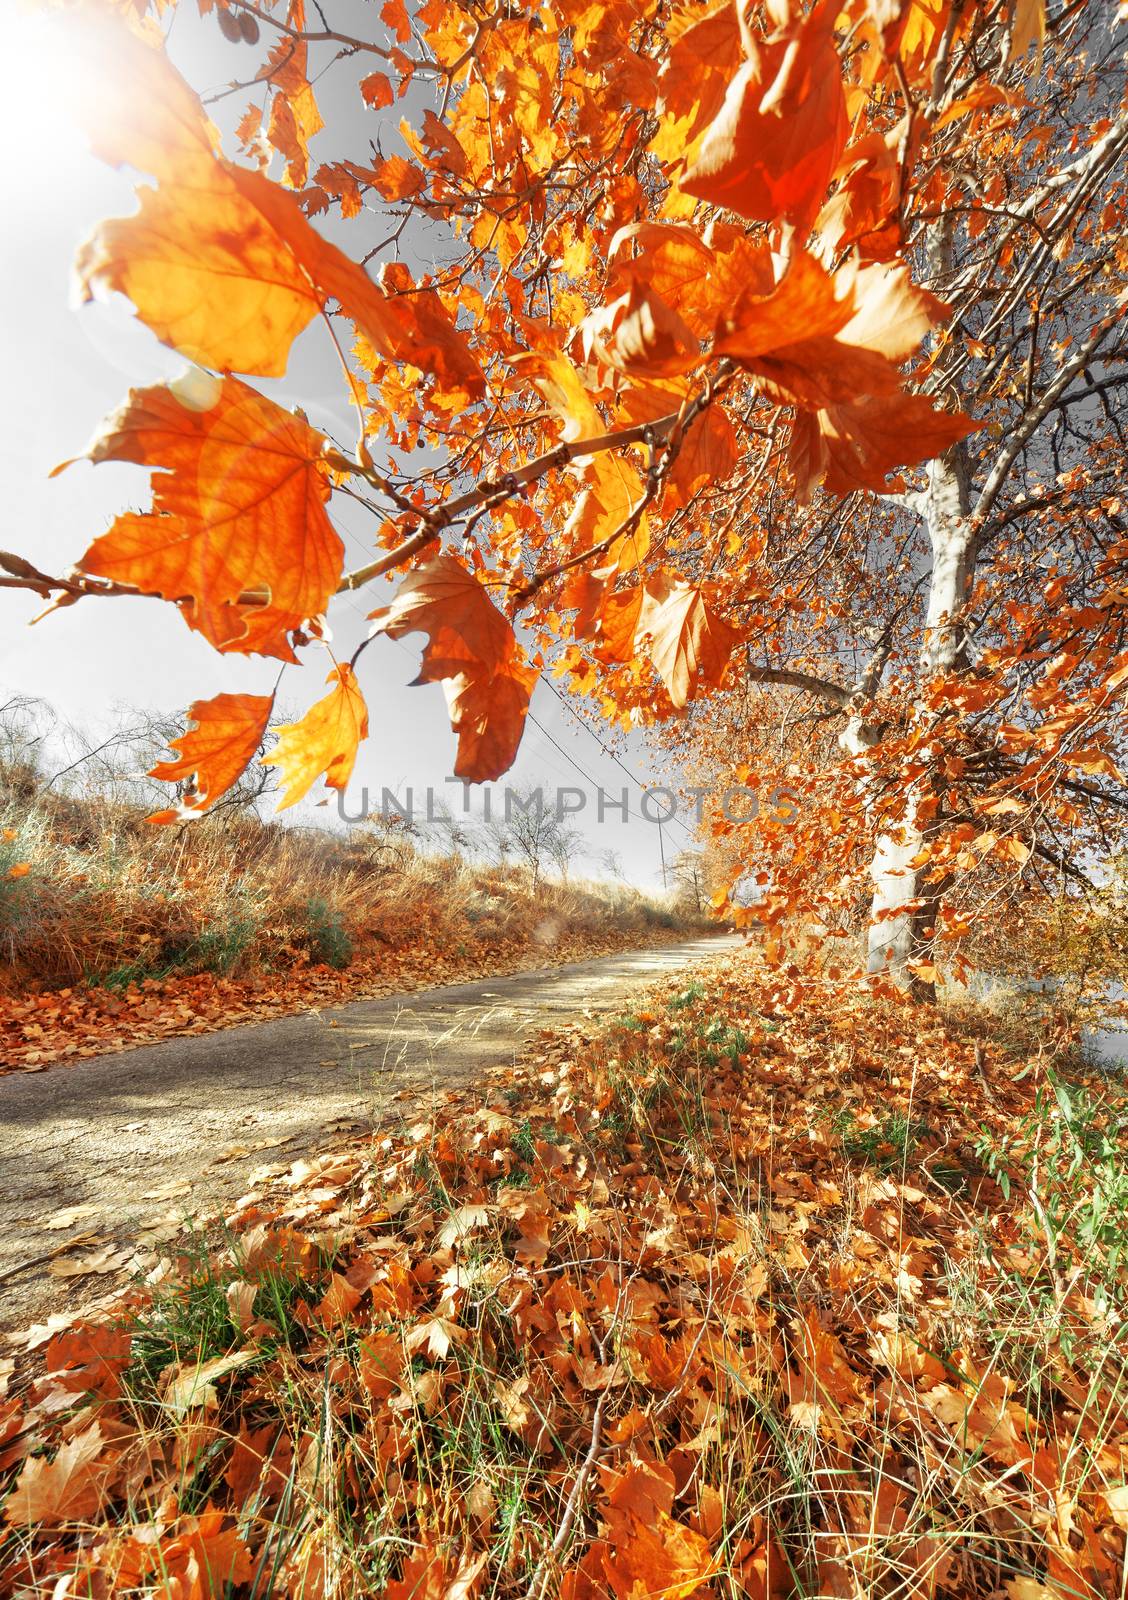 Tree autumn scenery by carloscastilla